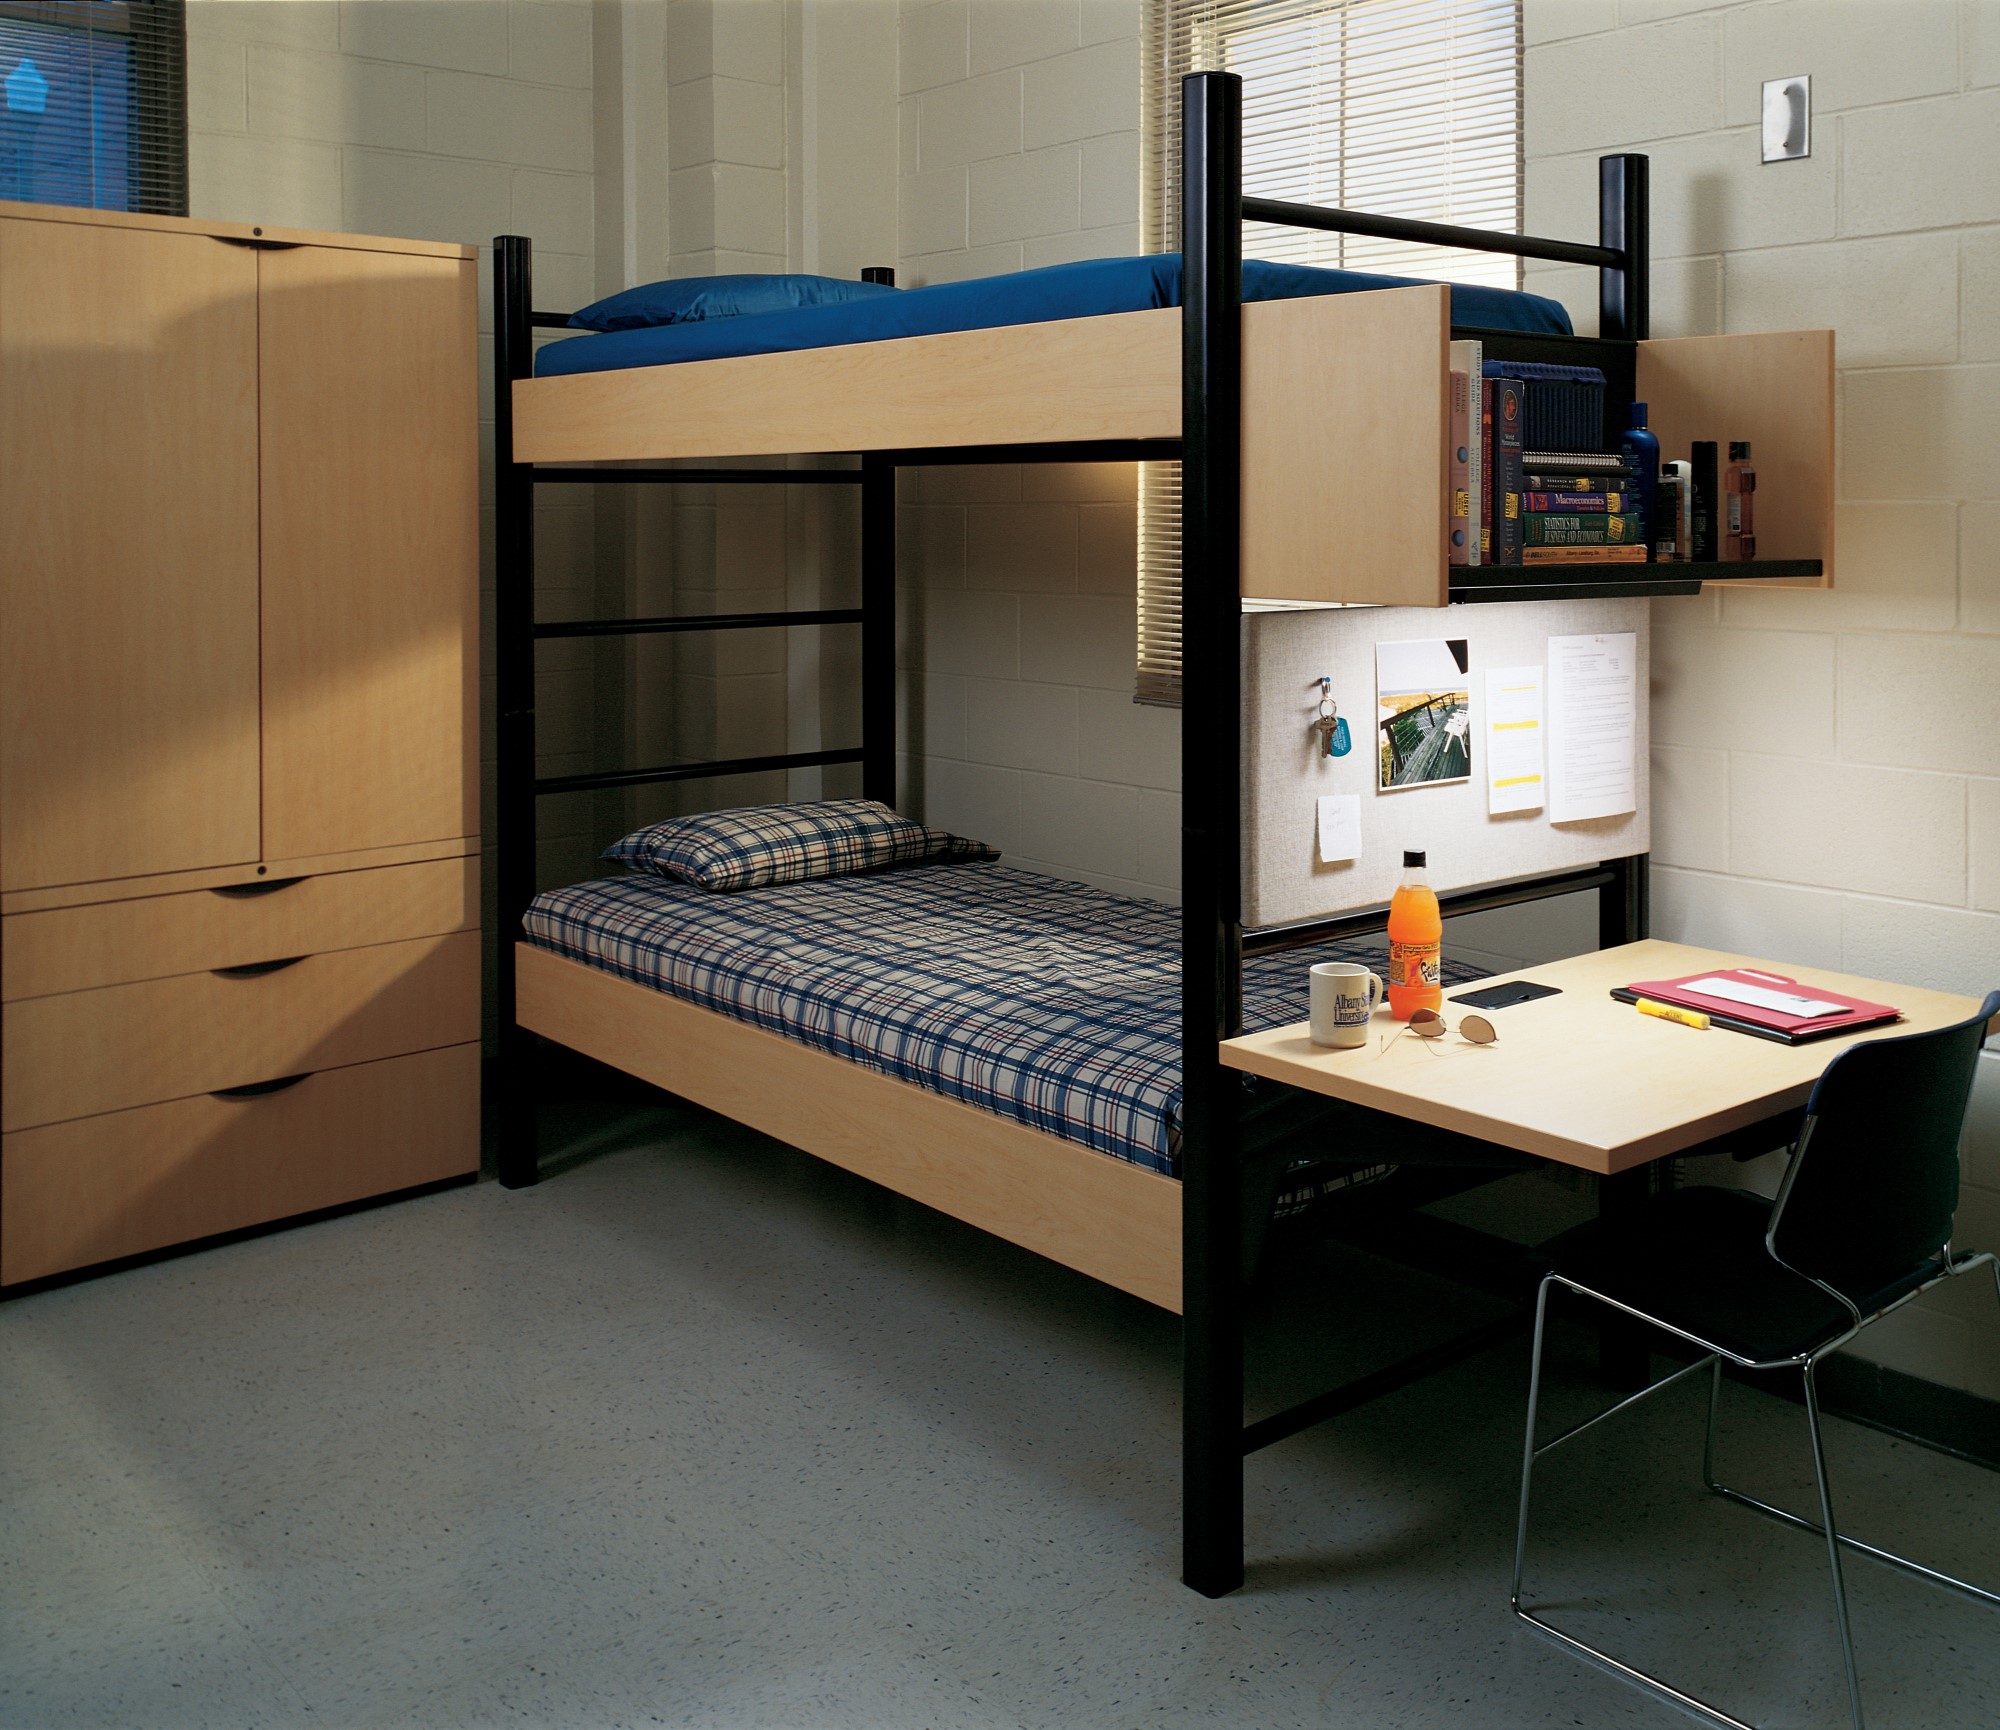 Двухэтажное общежитие. Двухэтажная кровать в общаге. Кровать двухъярусная для общежития. Двухъярусная кровать для студентов. Двухуровневая кровать в общагу.